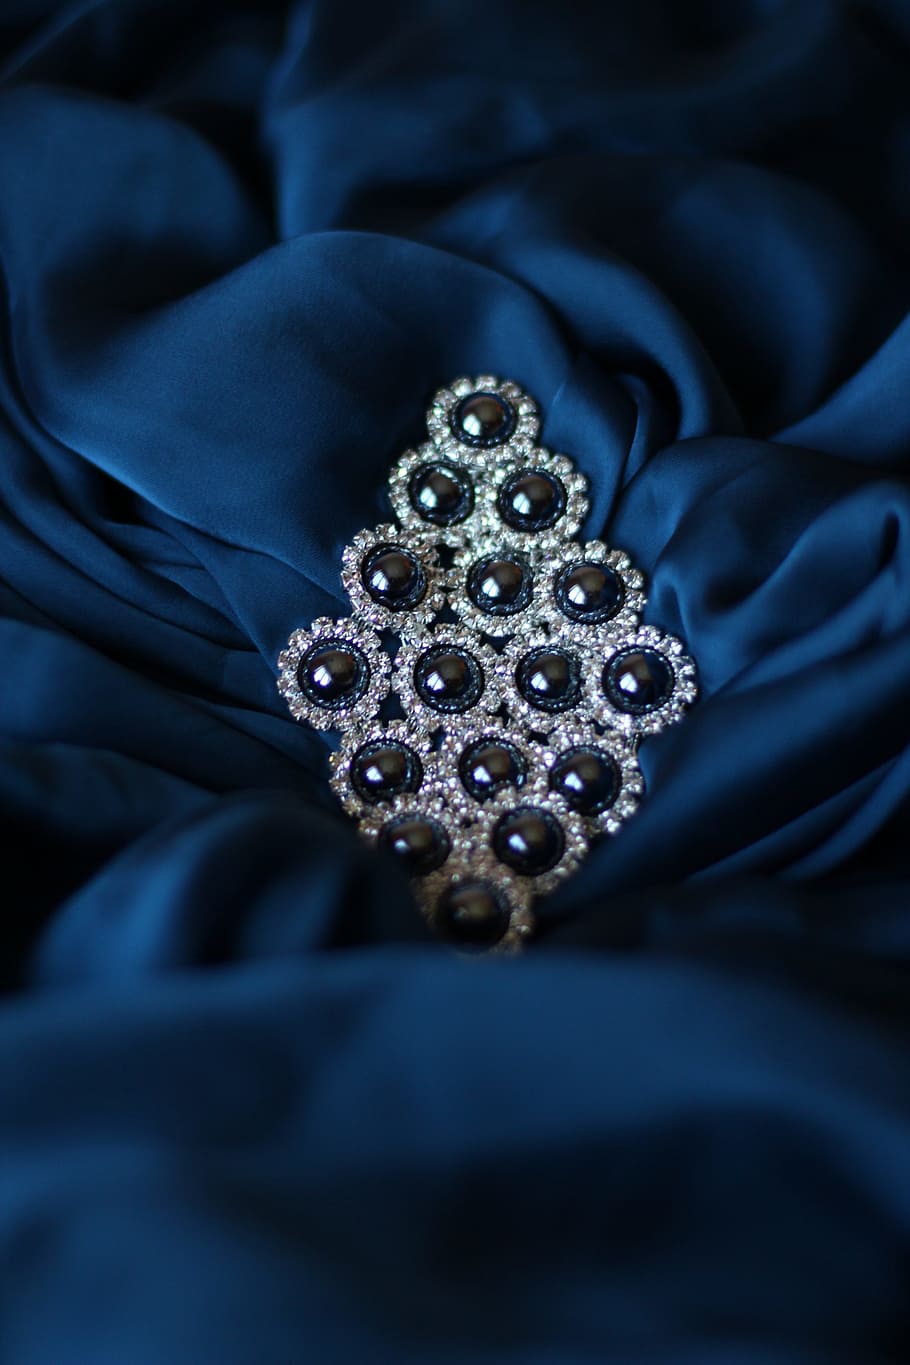 飾り, シルク, ブルー, ダイヤモンド-宝石, 高級, ジュエリー, 富, 貴重な宝石, 宝石, クローズアップ